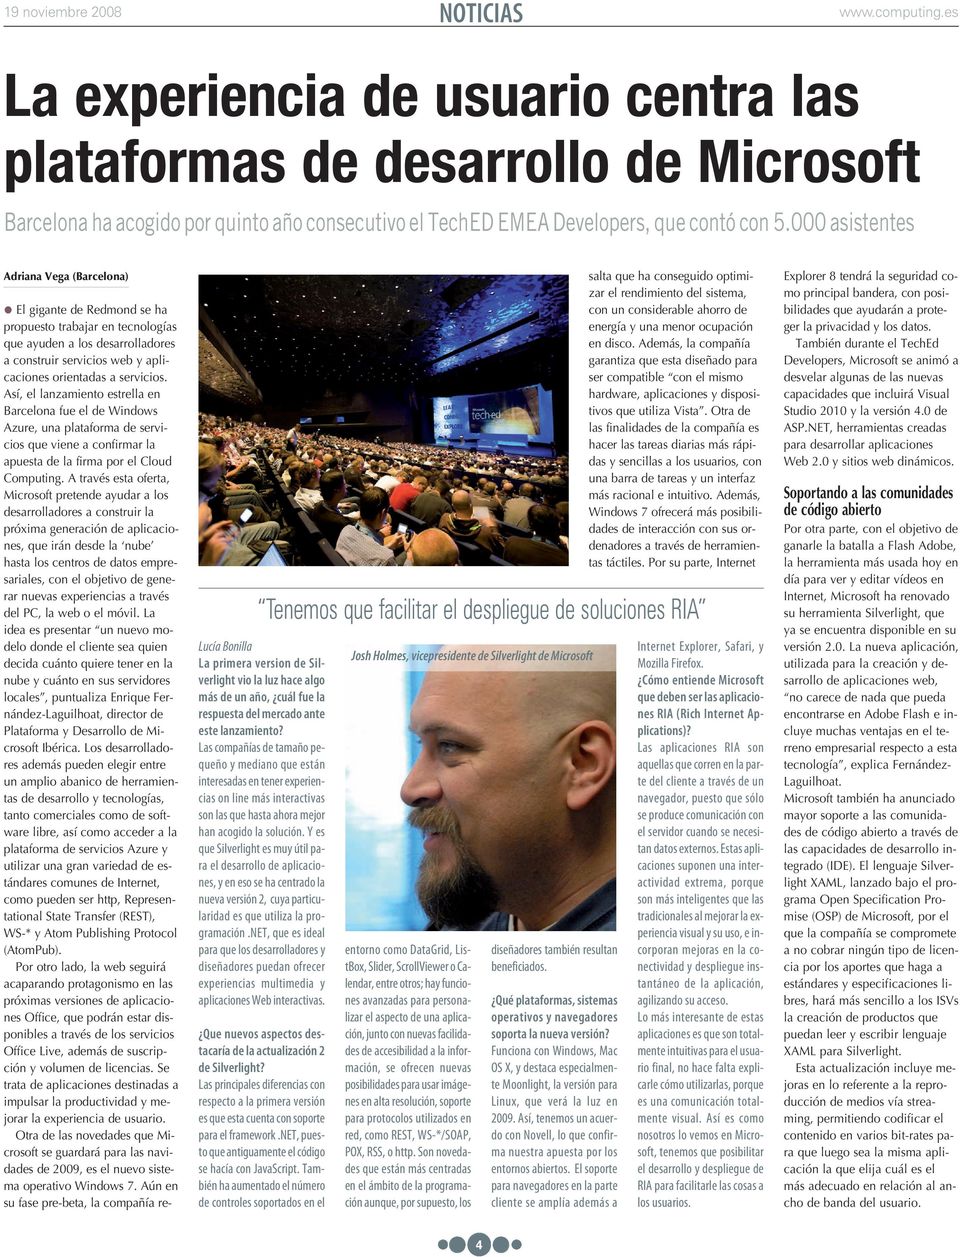 Así, el lanzamiento estrella en Barcelona fue el de Windows Azure, una plataforma de servicios que viene a confirmar la apuesta de la firma por el Cloud Computing.